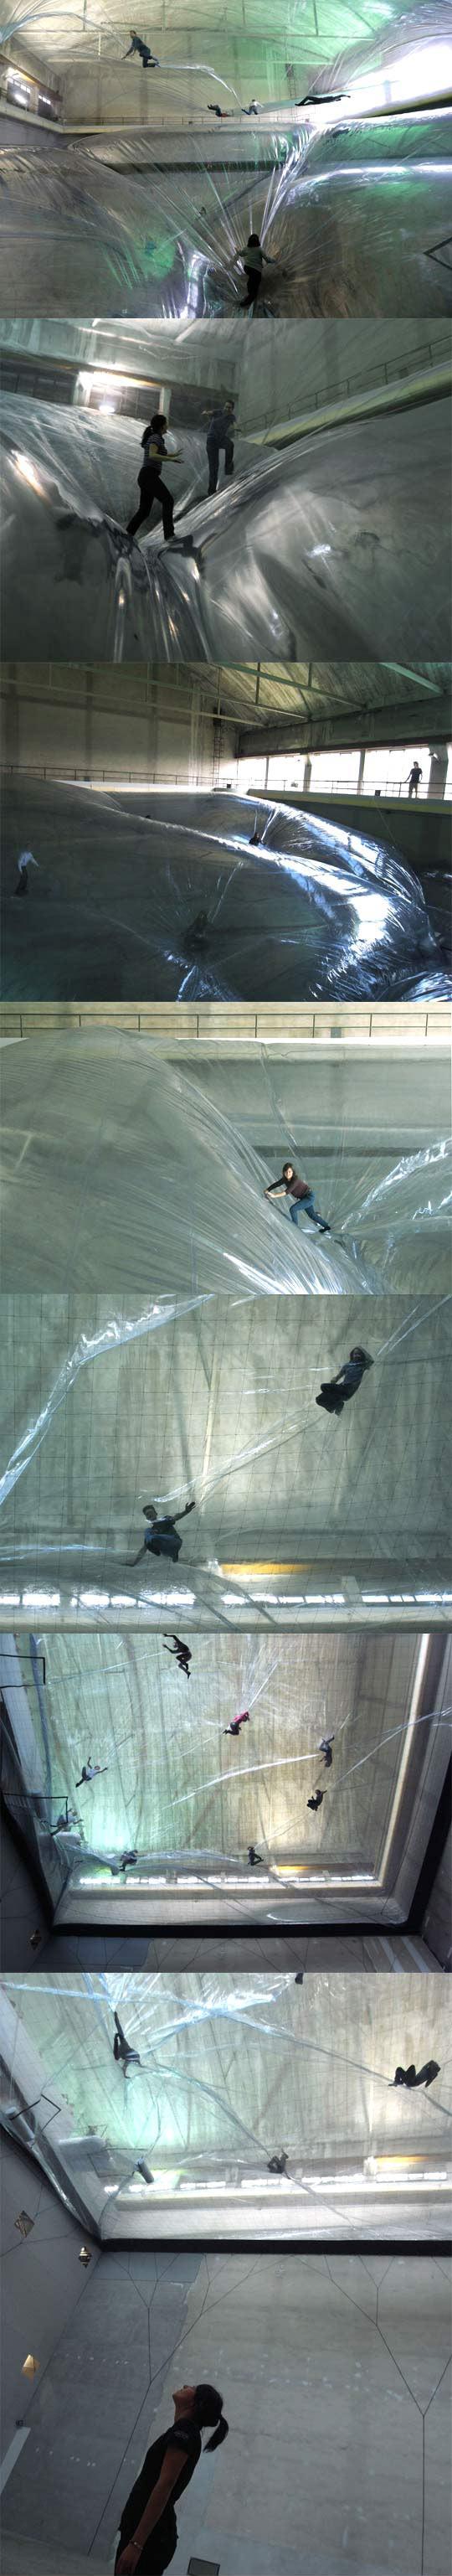 Extreme bubble wrap challenge.